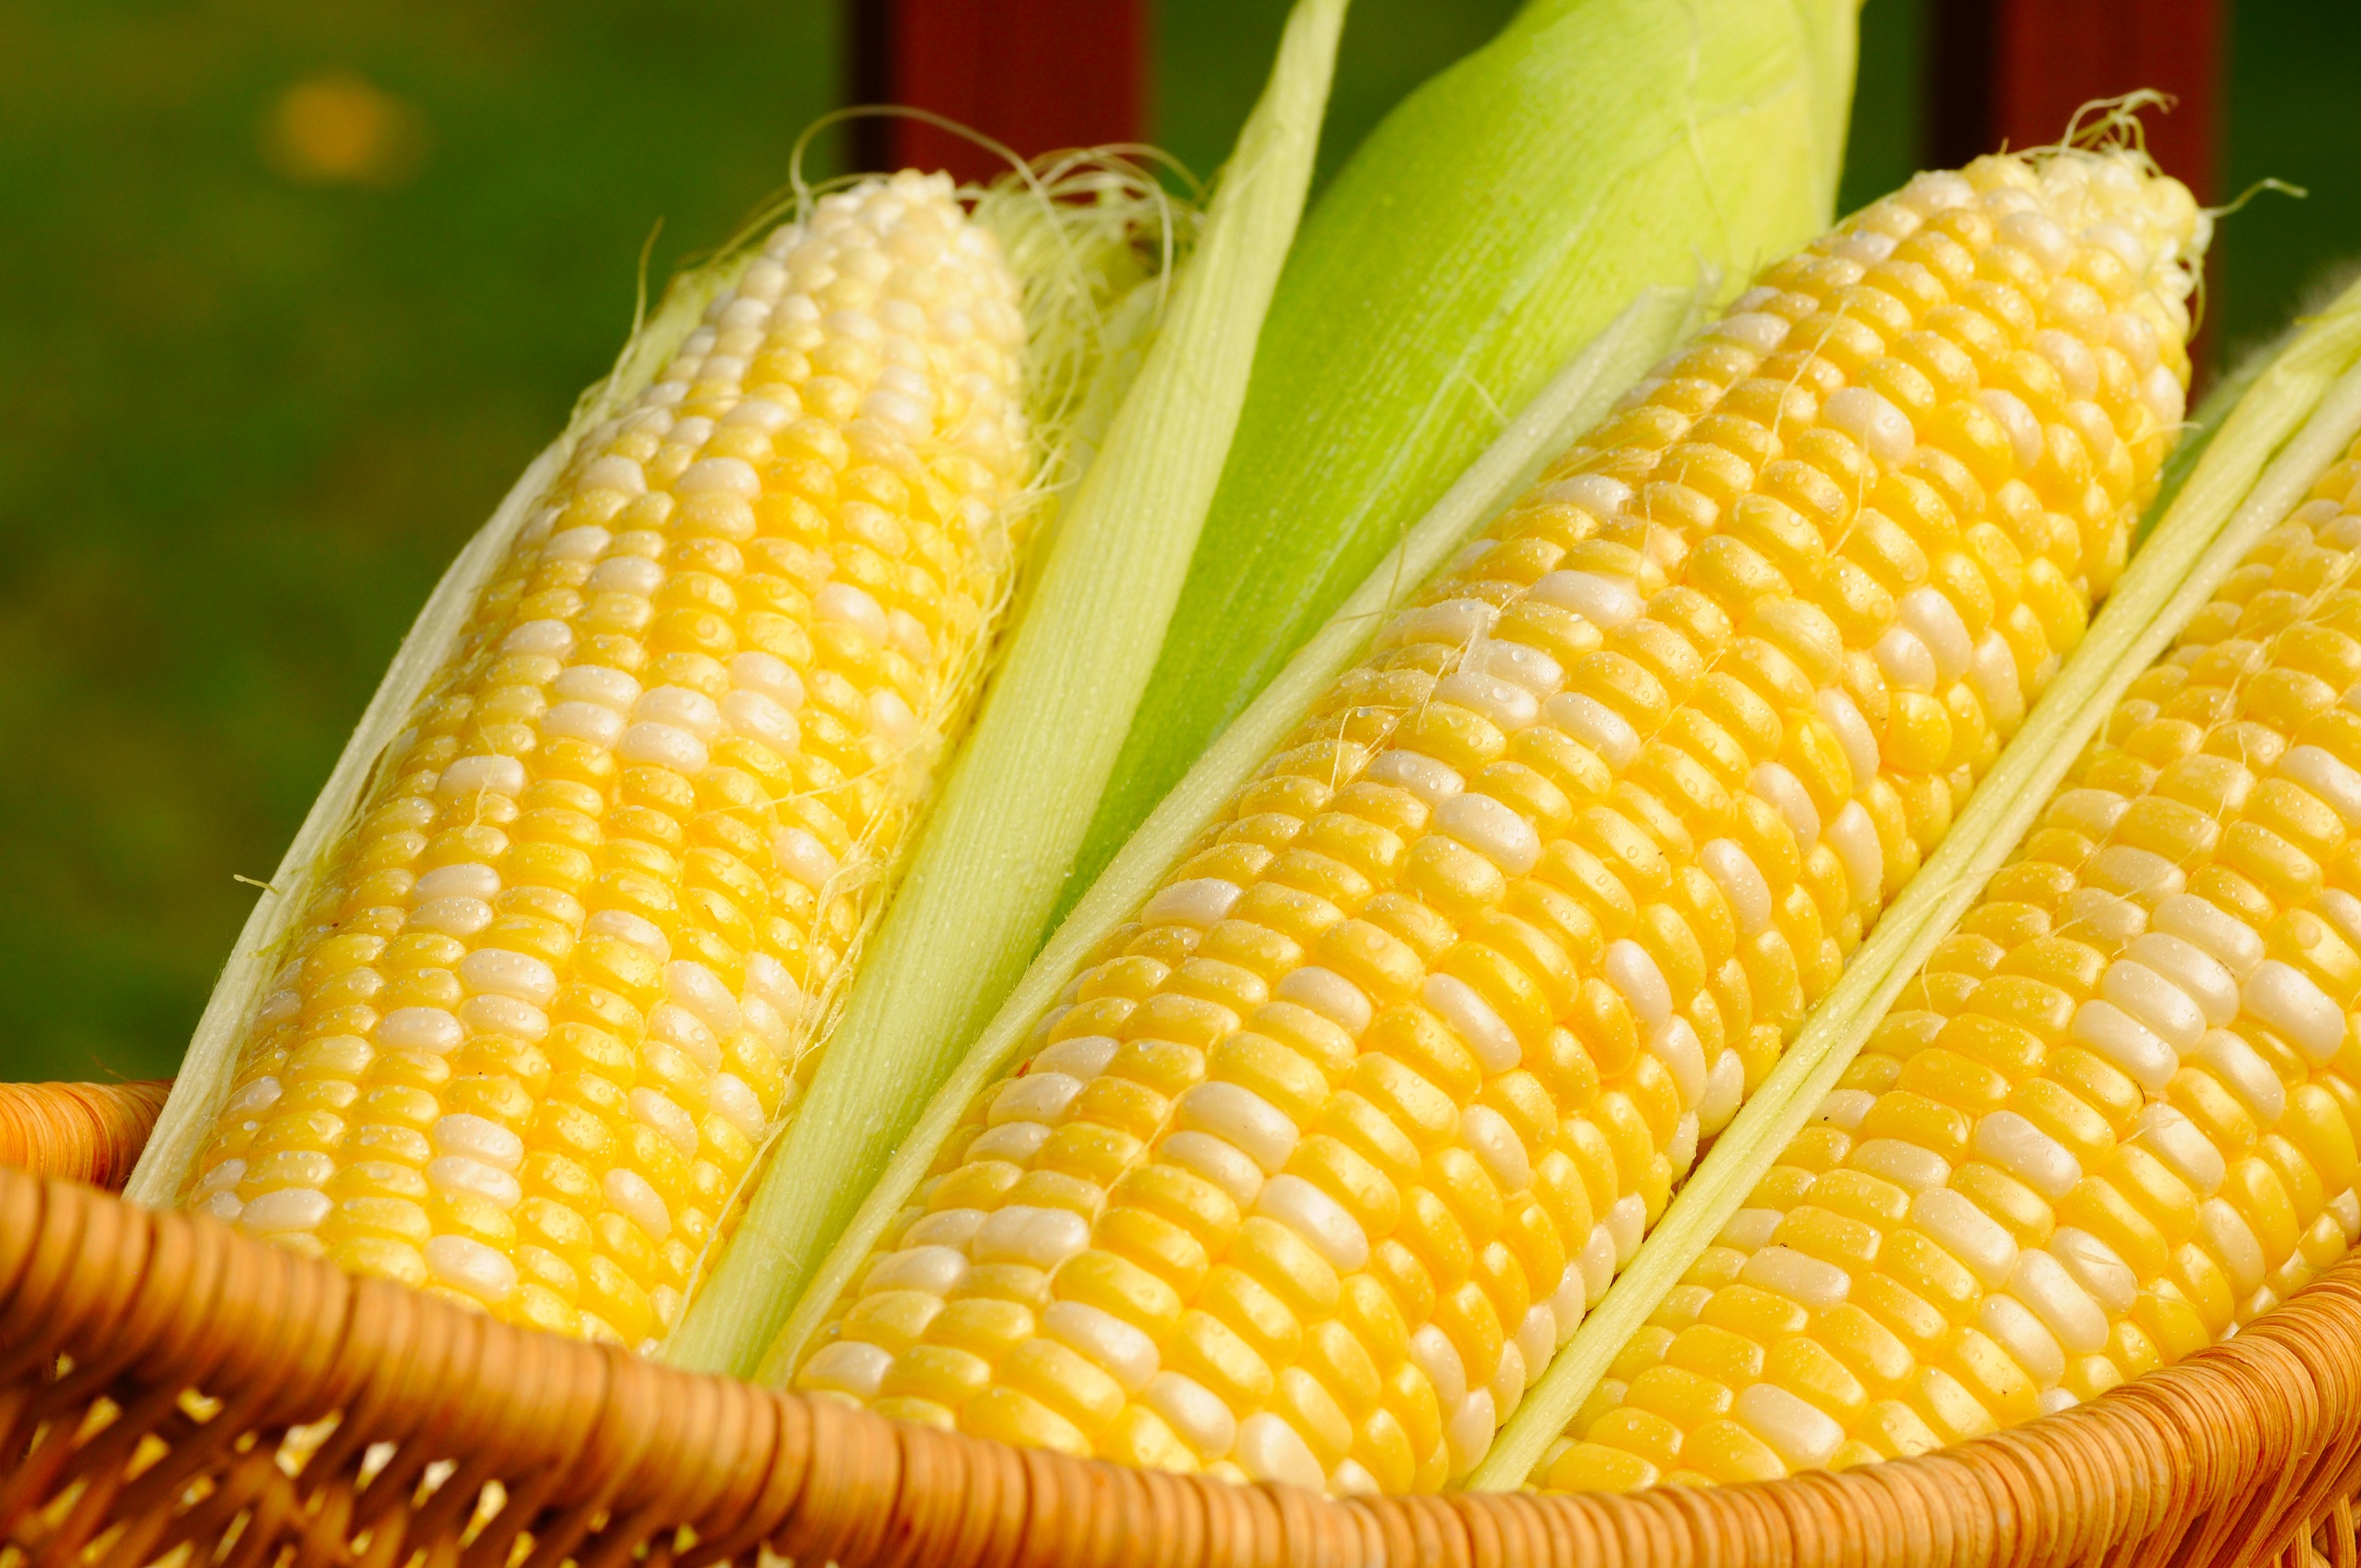 Ears of sweet corn